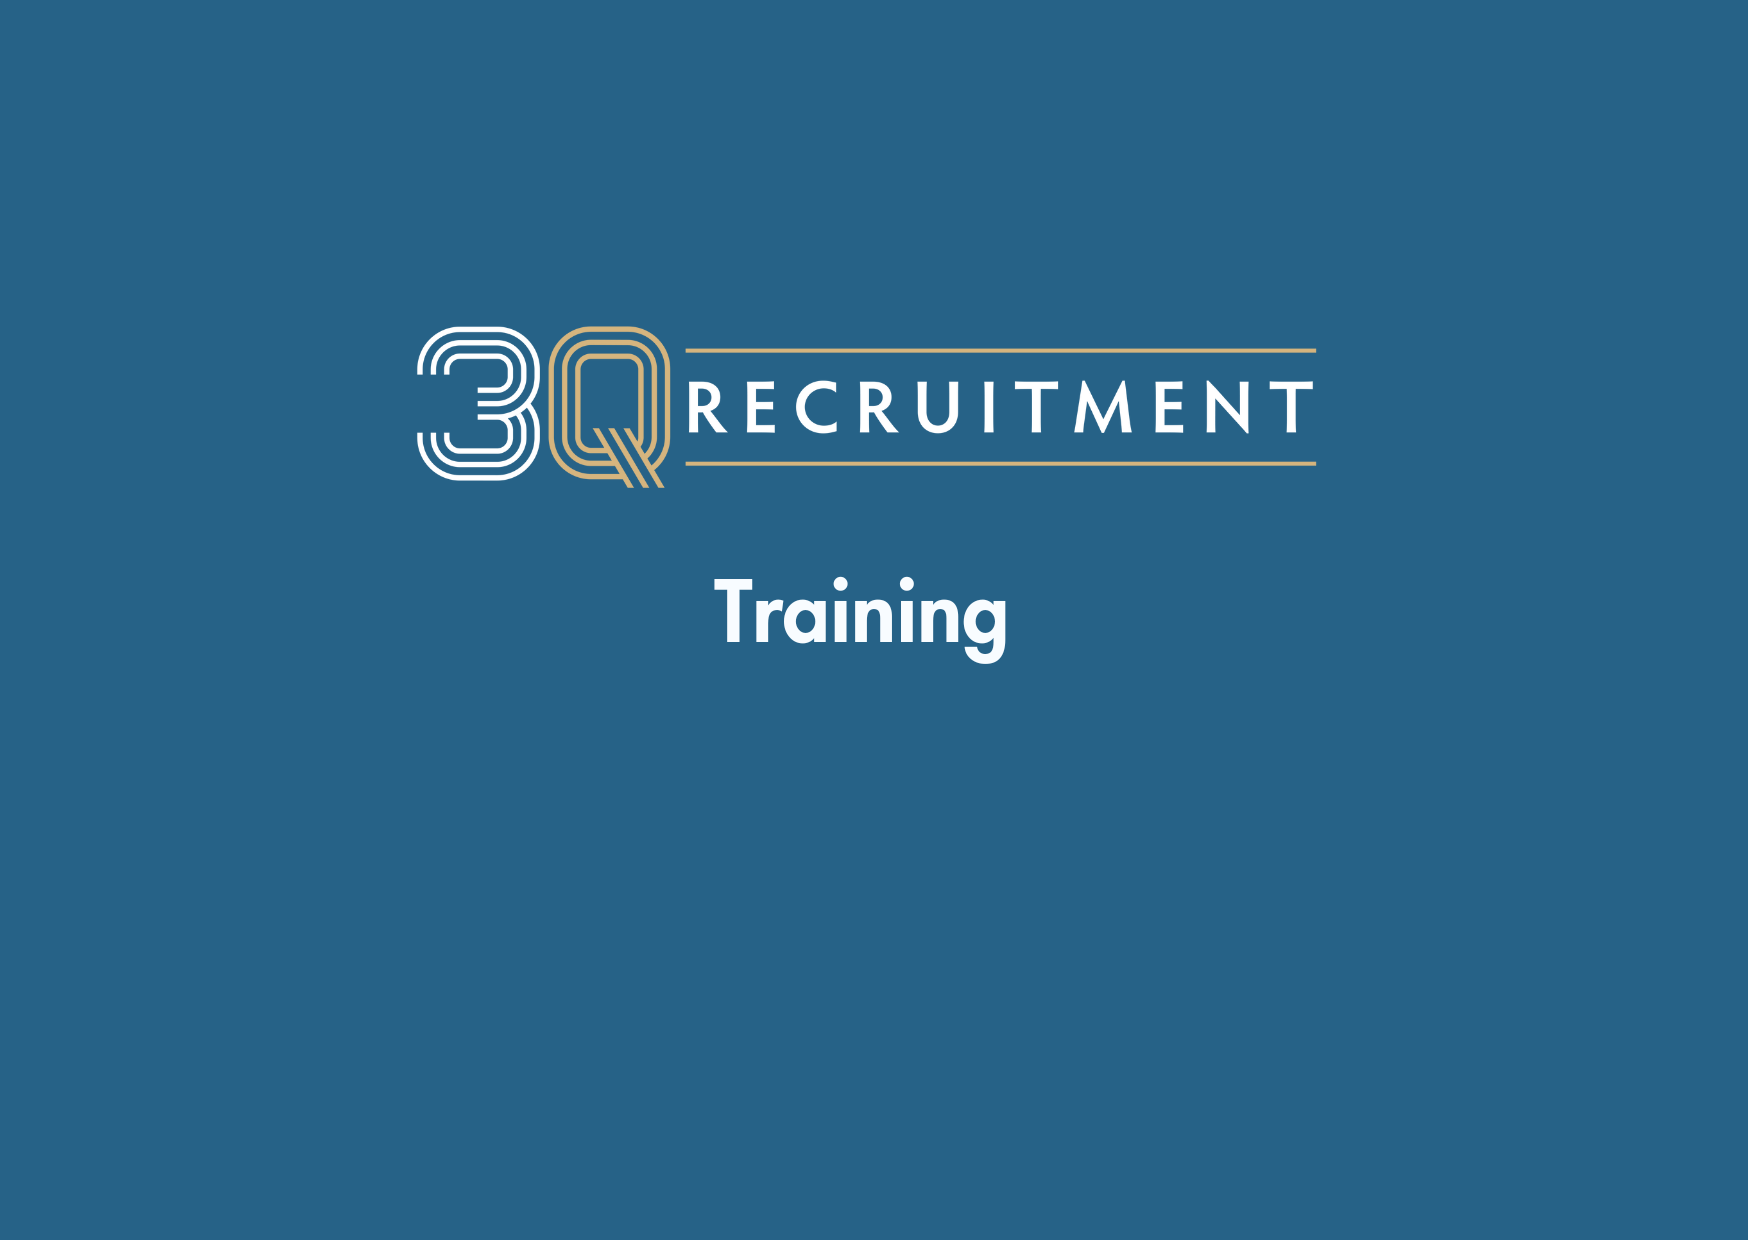 3Q Recruitment Training